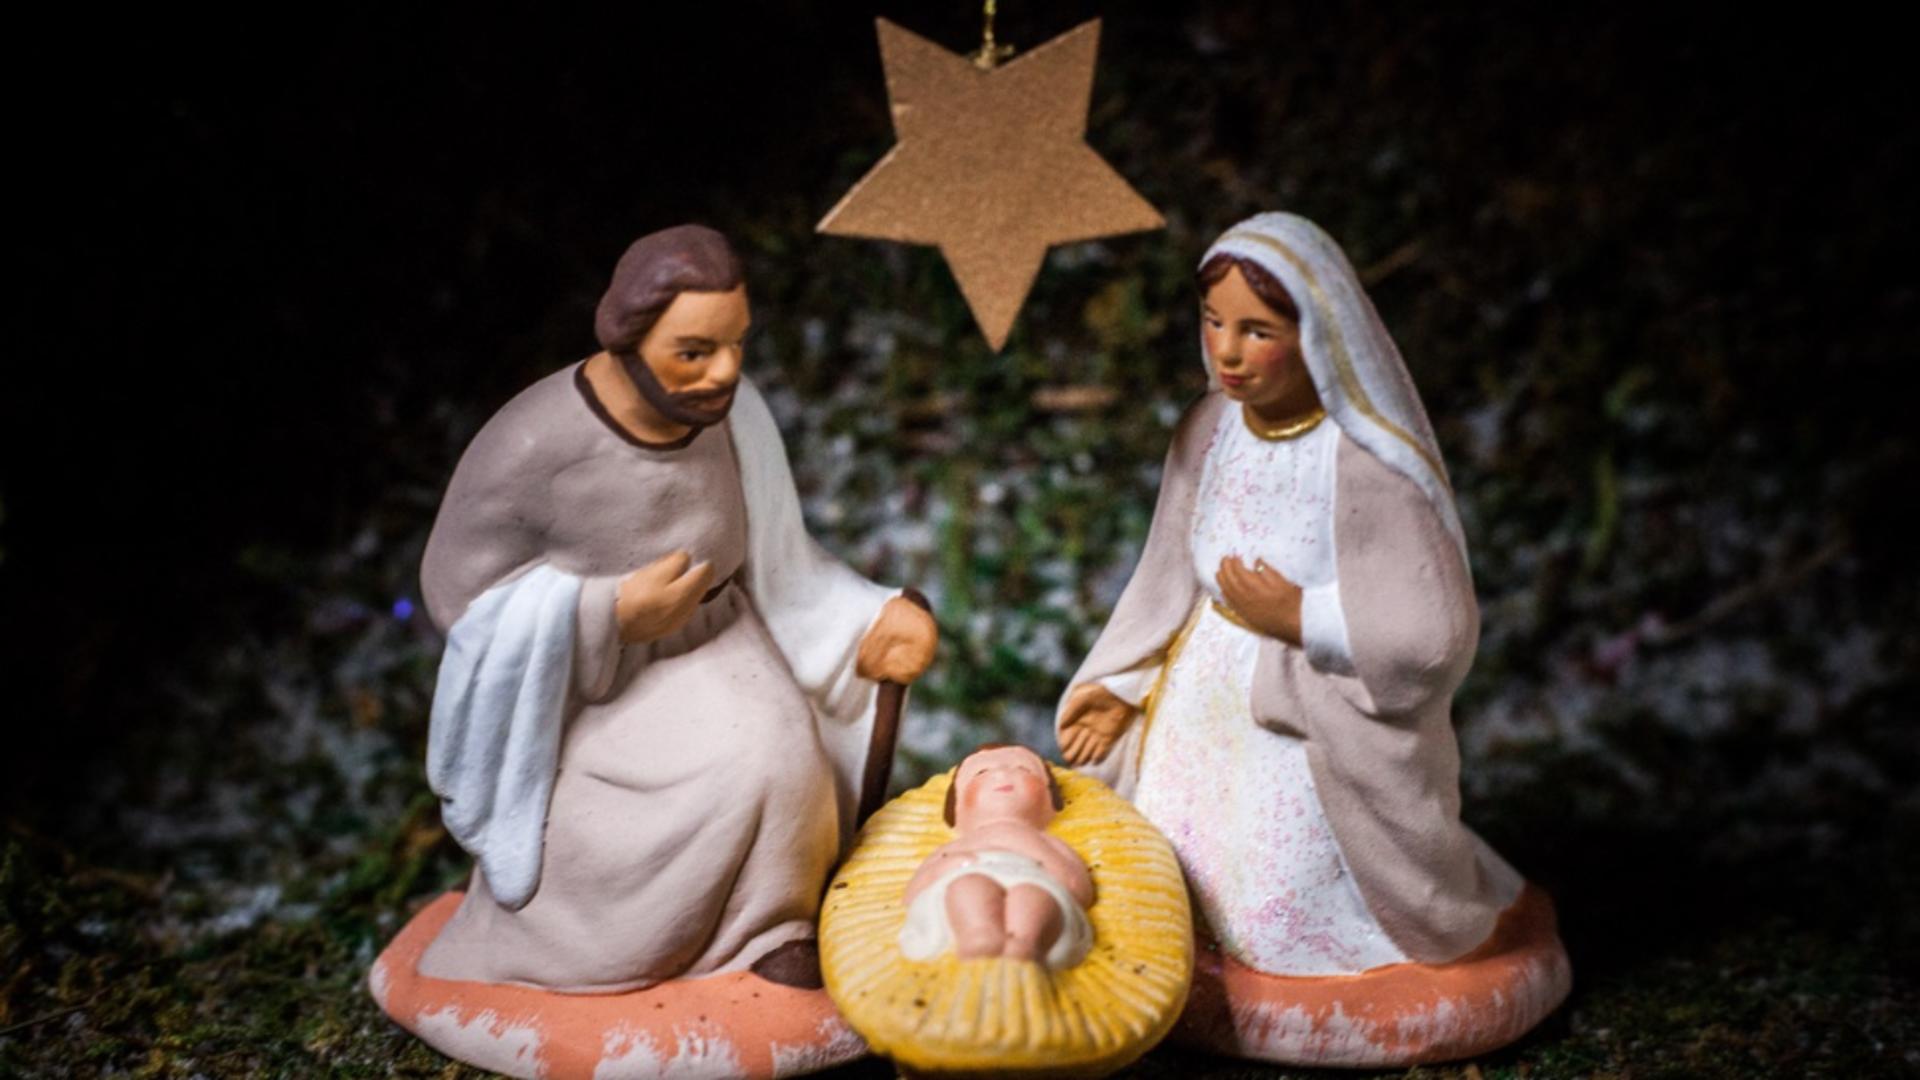 Când s-a născut, de fapt, Isus Hristos? Ce spune experții despre data de 25 decembrie